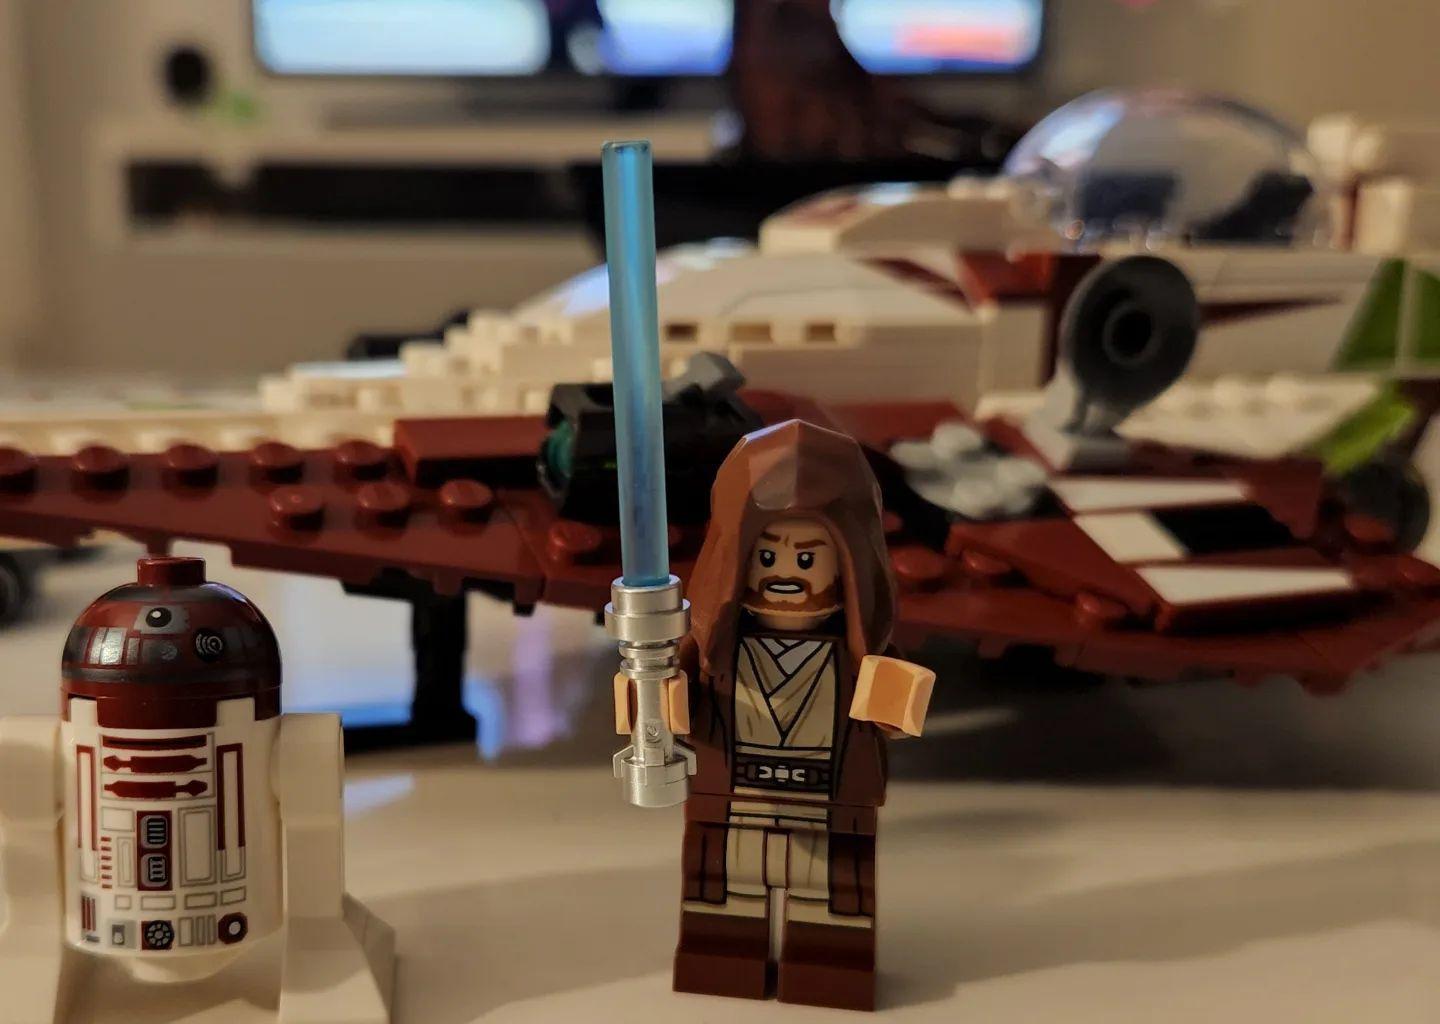 LEGO Star Wars 75333 pas cher, Le chasseur Jedi d'Obi-Wan Kenobi